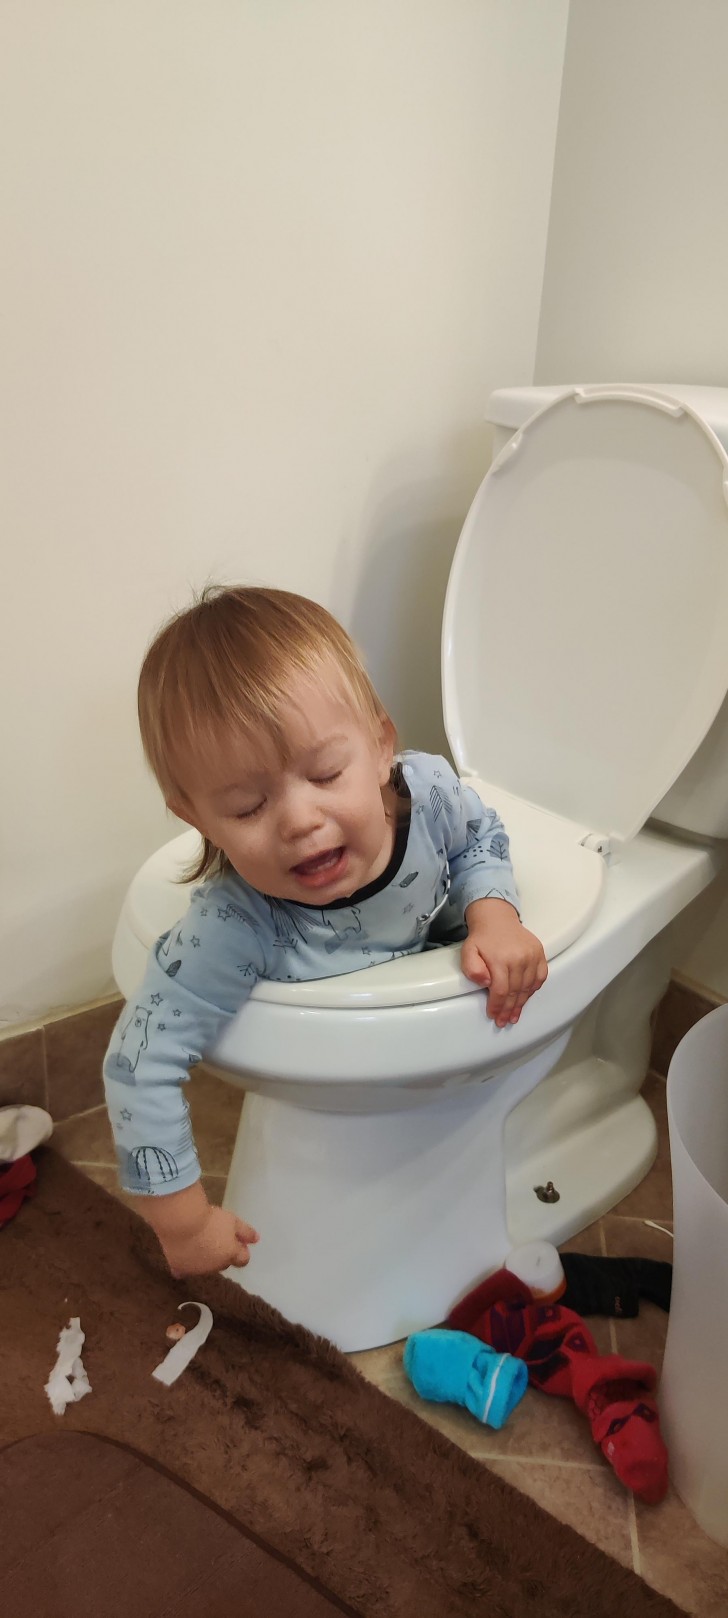 Meu filho acabou de perceber que fez a coisa errada... no banheiro!